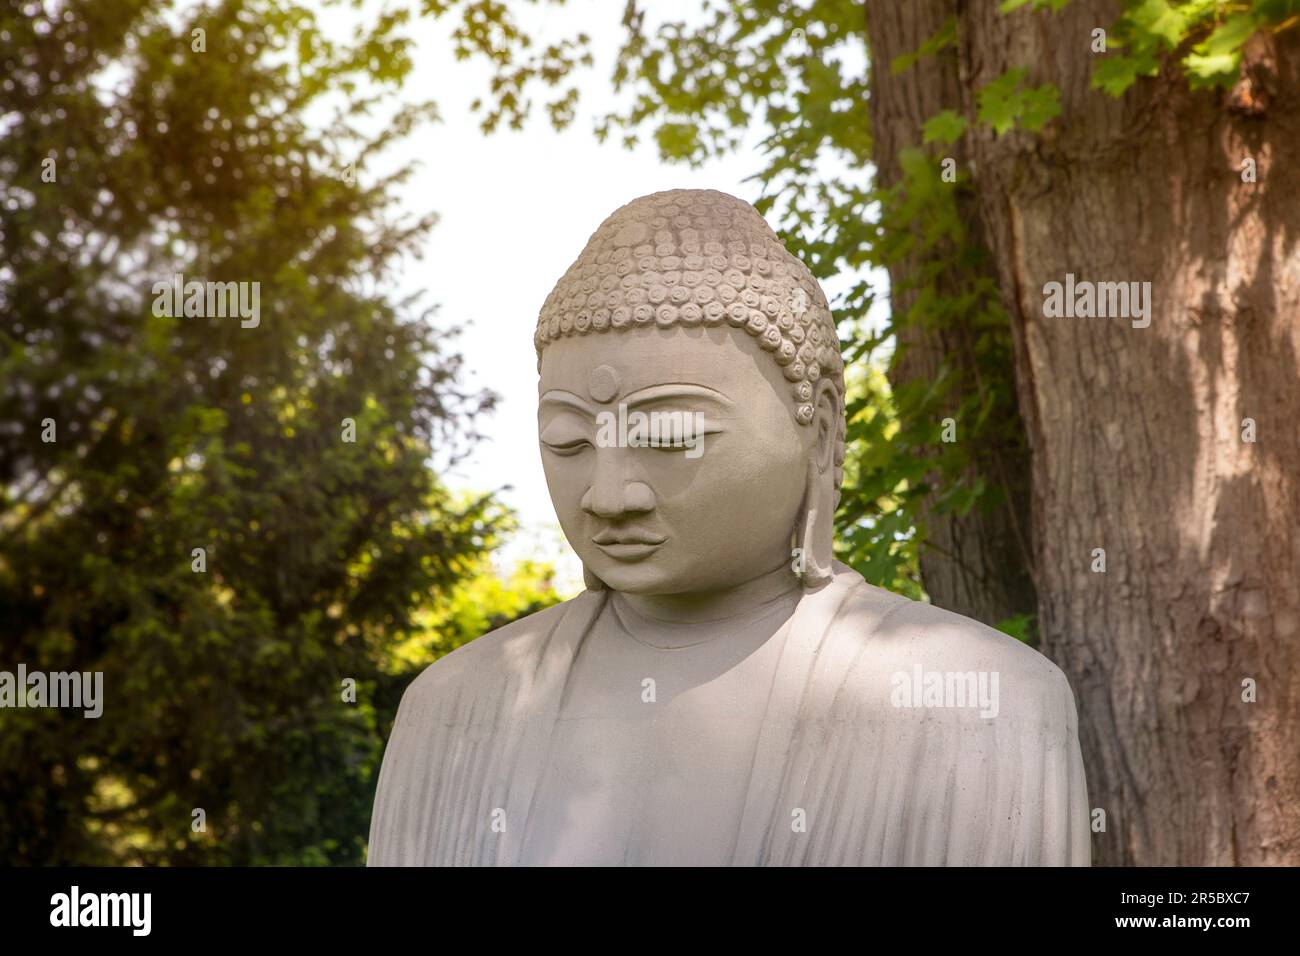 Nahaufnahme des buddha-Gesichts unter dem Baum im grünen Garten, meditierende Statue im Freien. Spiritualitätskonzept. Stockfoto